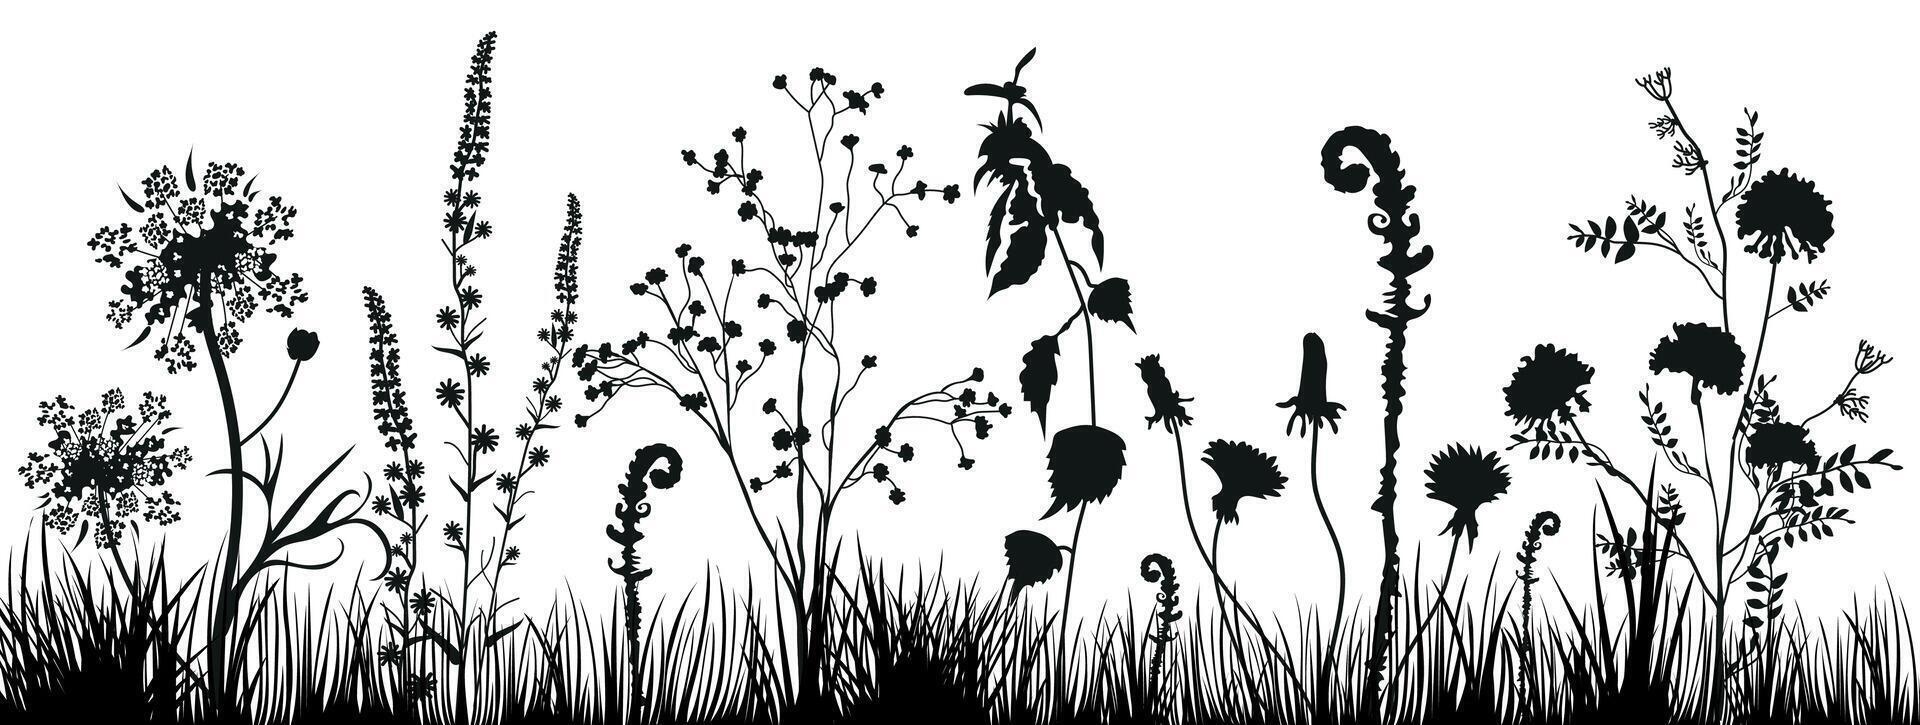 achtergrond met zwart silhouetten van weide wild grassen en wilde bloemen. bloemen achtergrond. natuur decor element voor spandoeken, reclame, brochure, kaarten, uitnodiging, felicitatie en zo Aan. vector